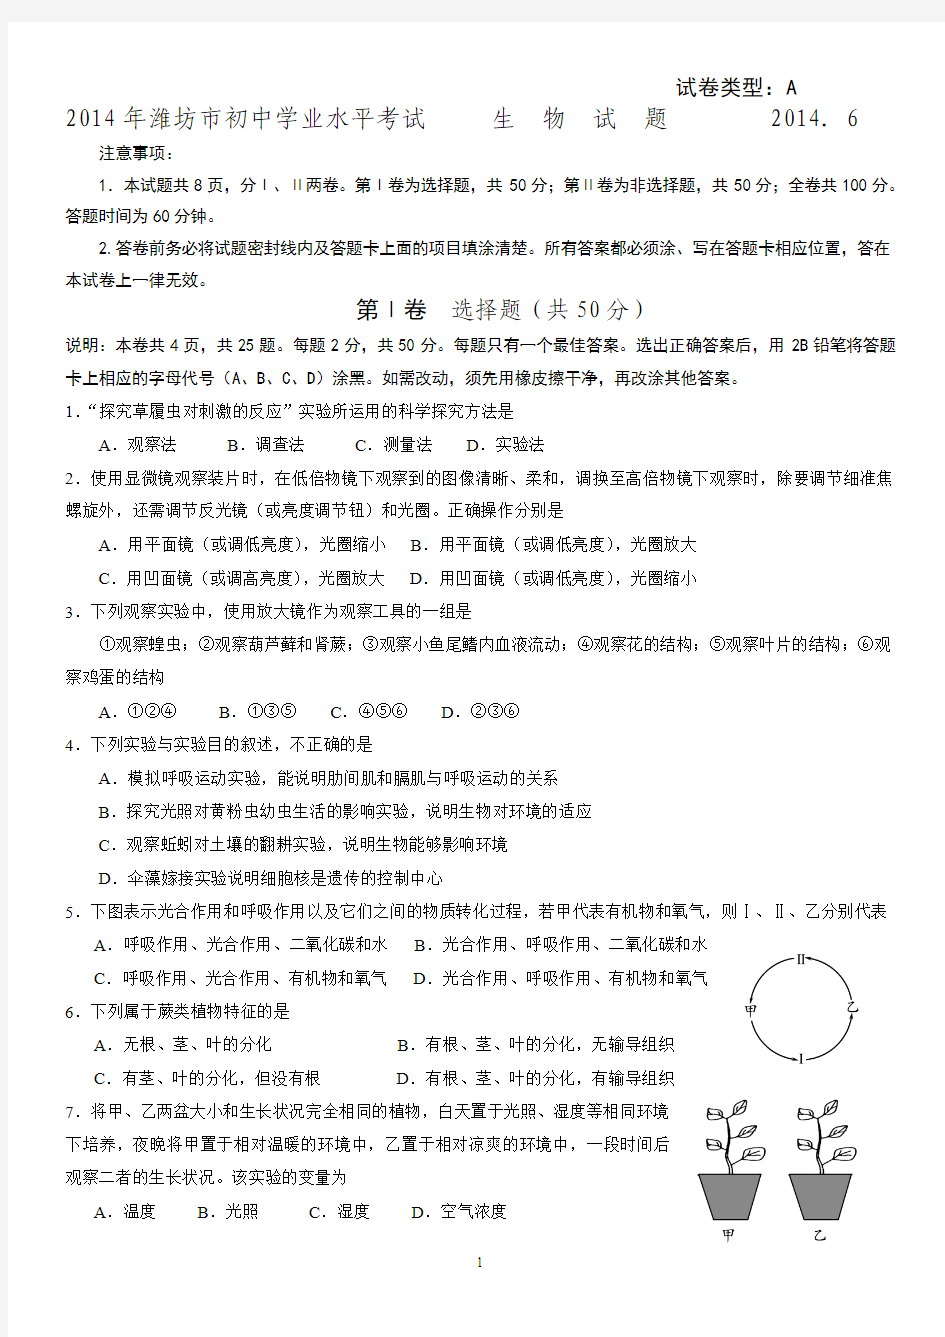 (已整理)2014初中潍坊生物学业水平考试题